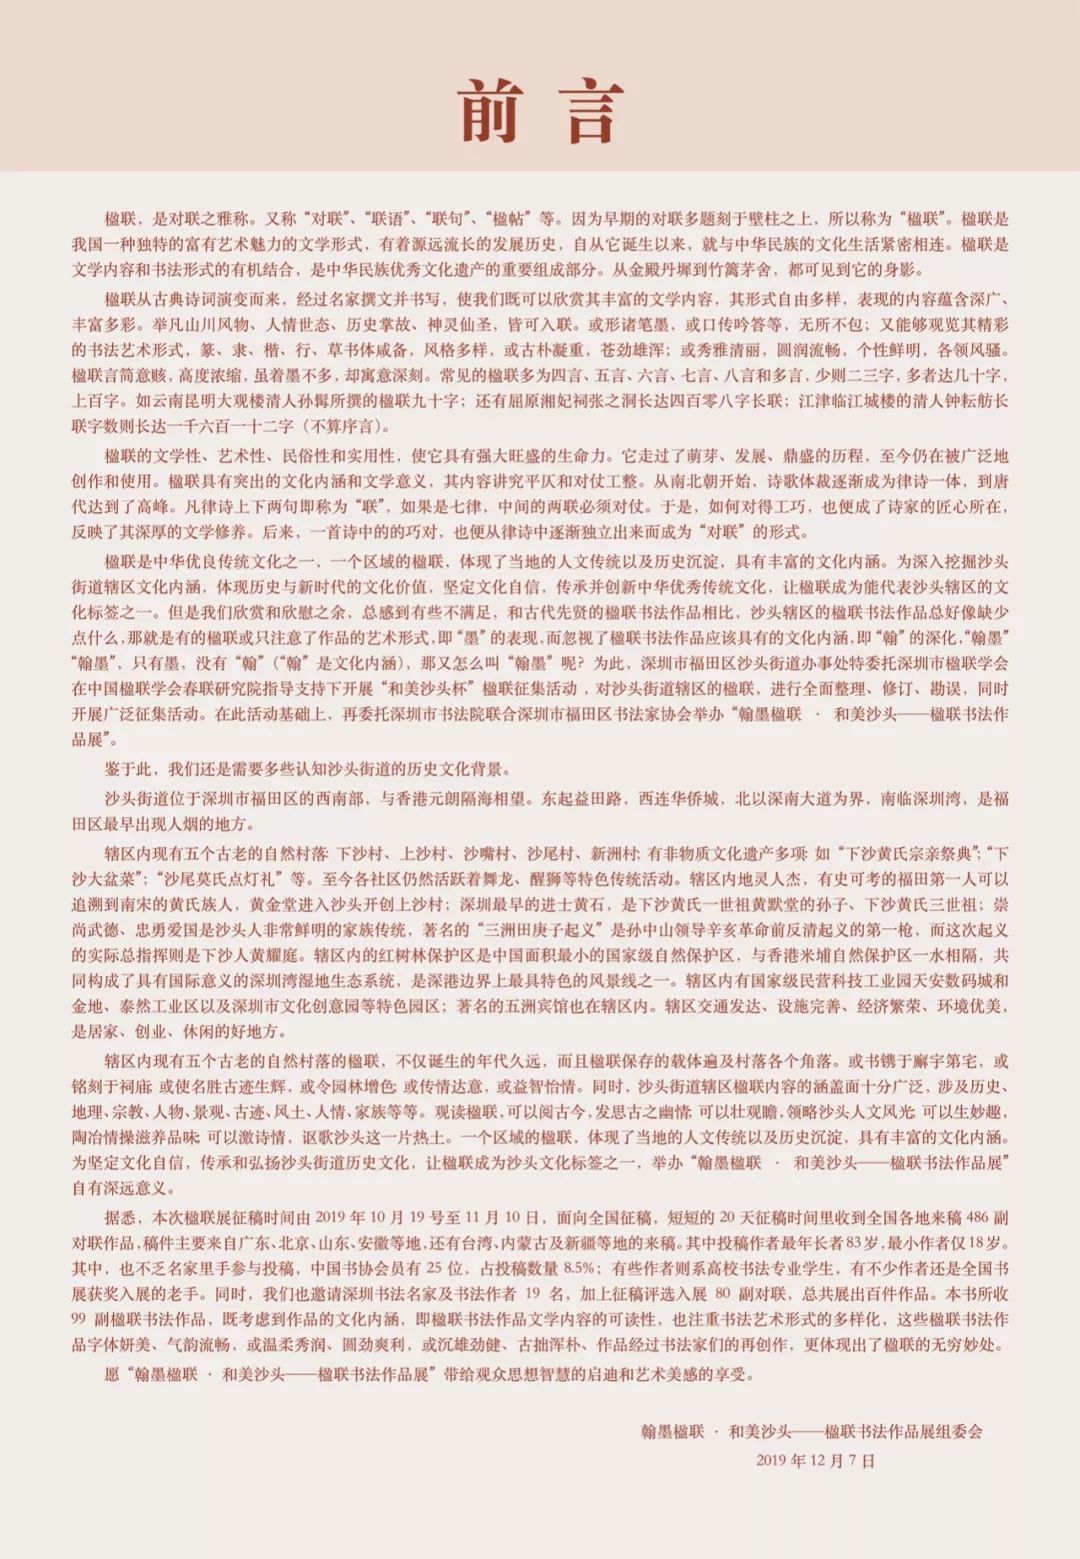 翰墨楹联 · 和美沙头—楹联书法作品展在深圳市民中心圆满举行